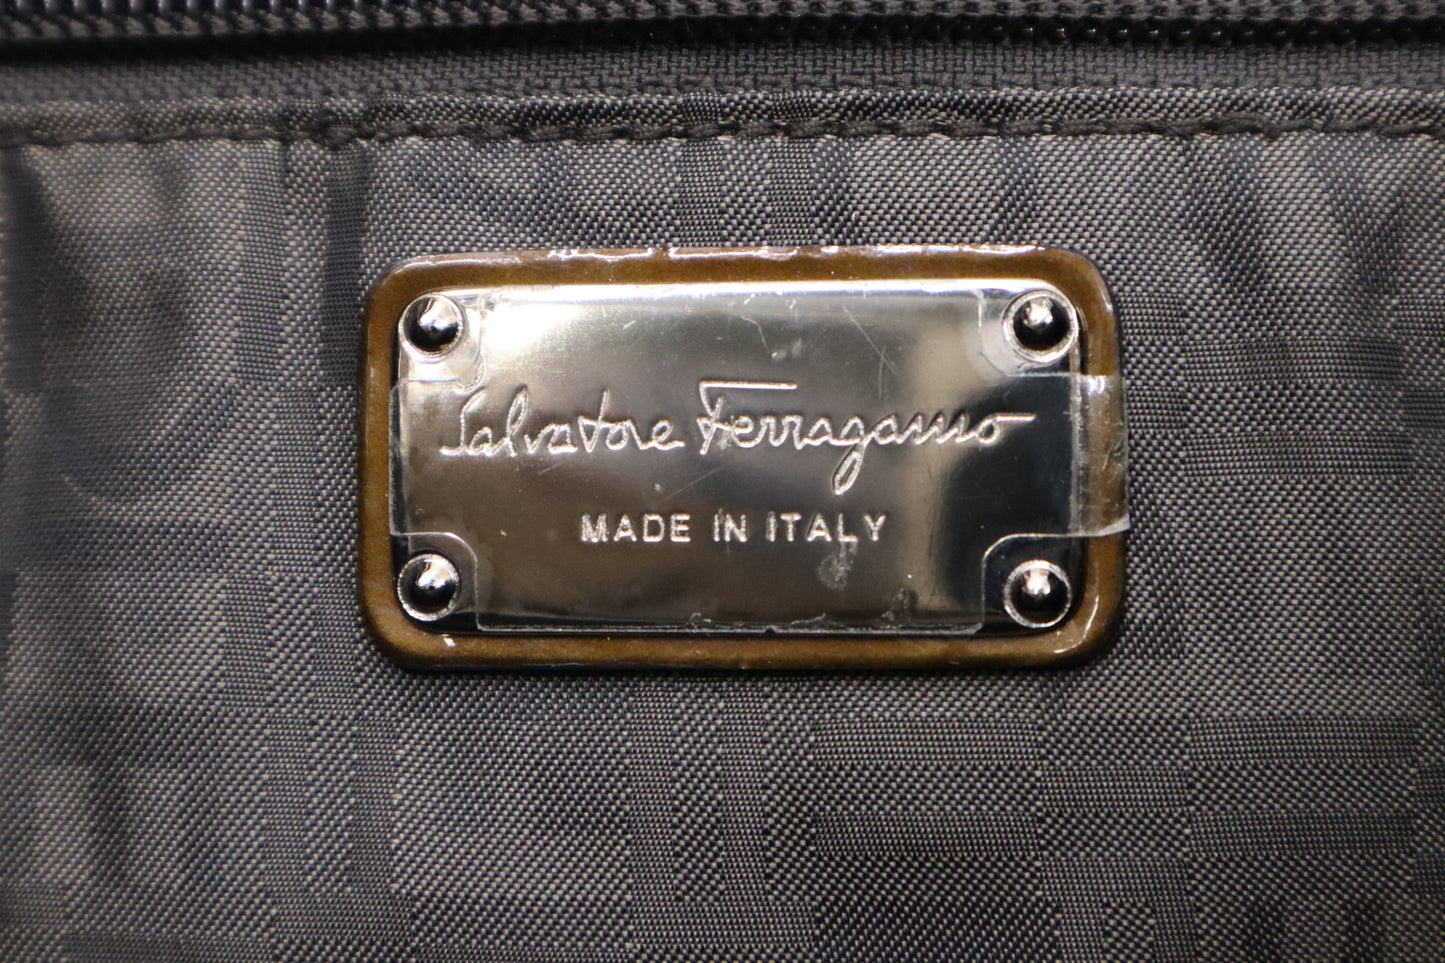 Ferragamo Marisa Handbag in Bronze Patent Leather